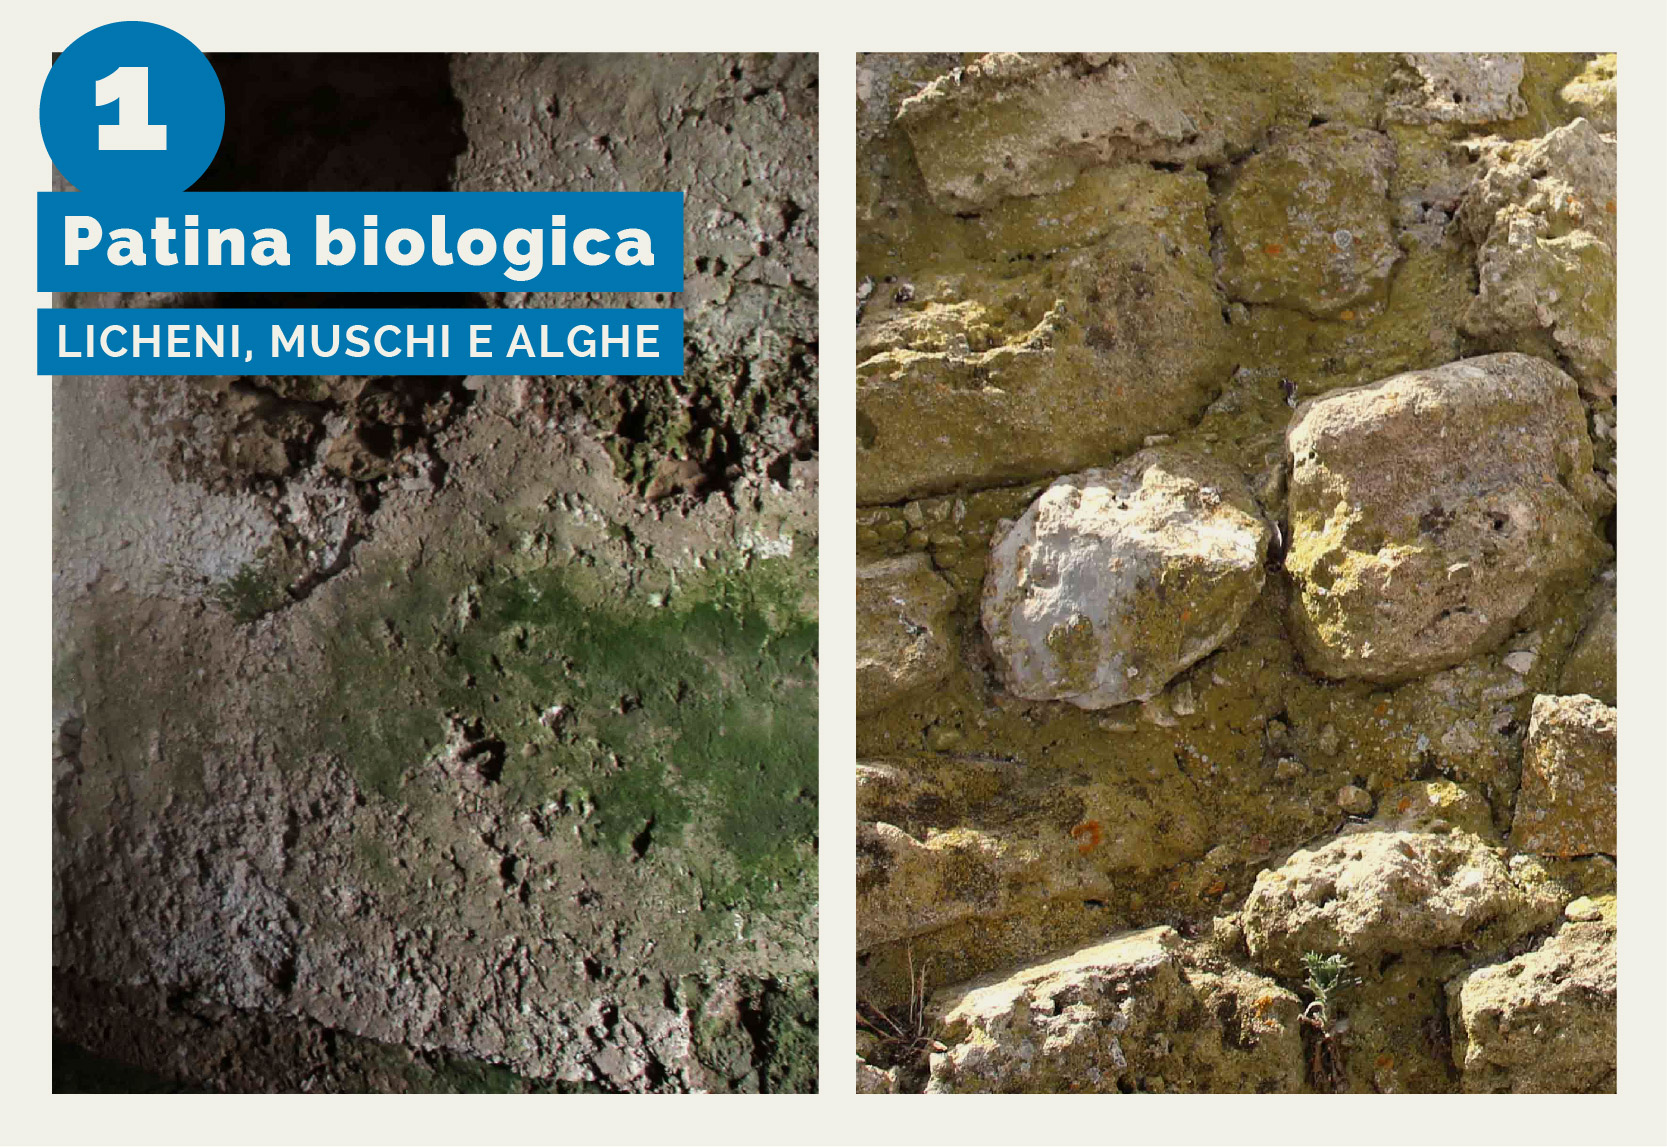 Torre Mozza - L'immagine mostra il degrado dovuto alla patina biologica sulla muratura interna ed sterna di Torre Mozza per l'attacco di licheni, muschi e alghe